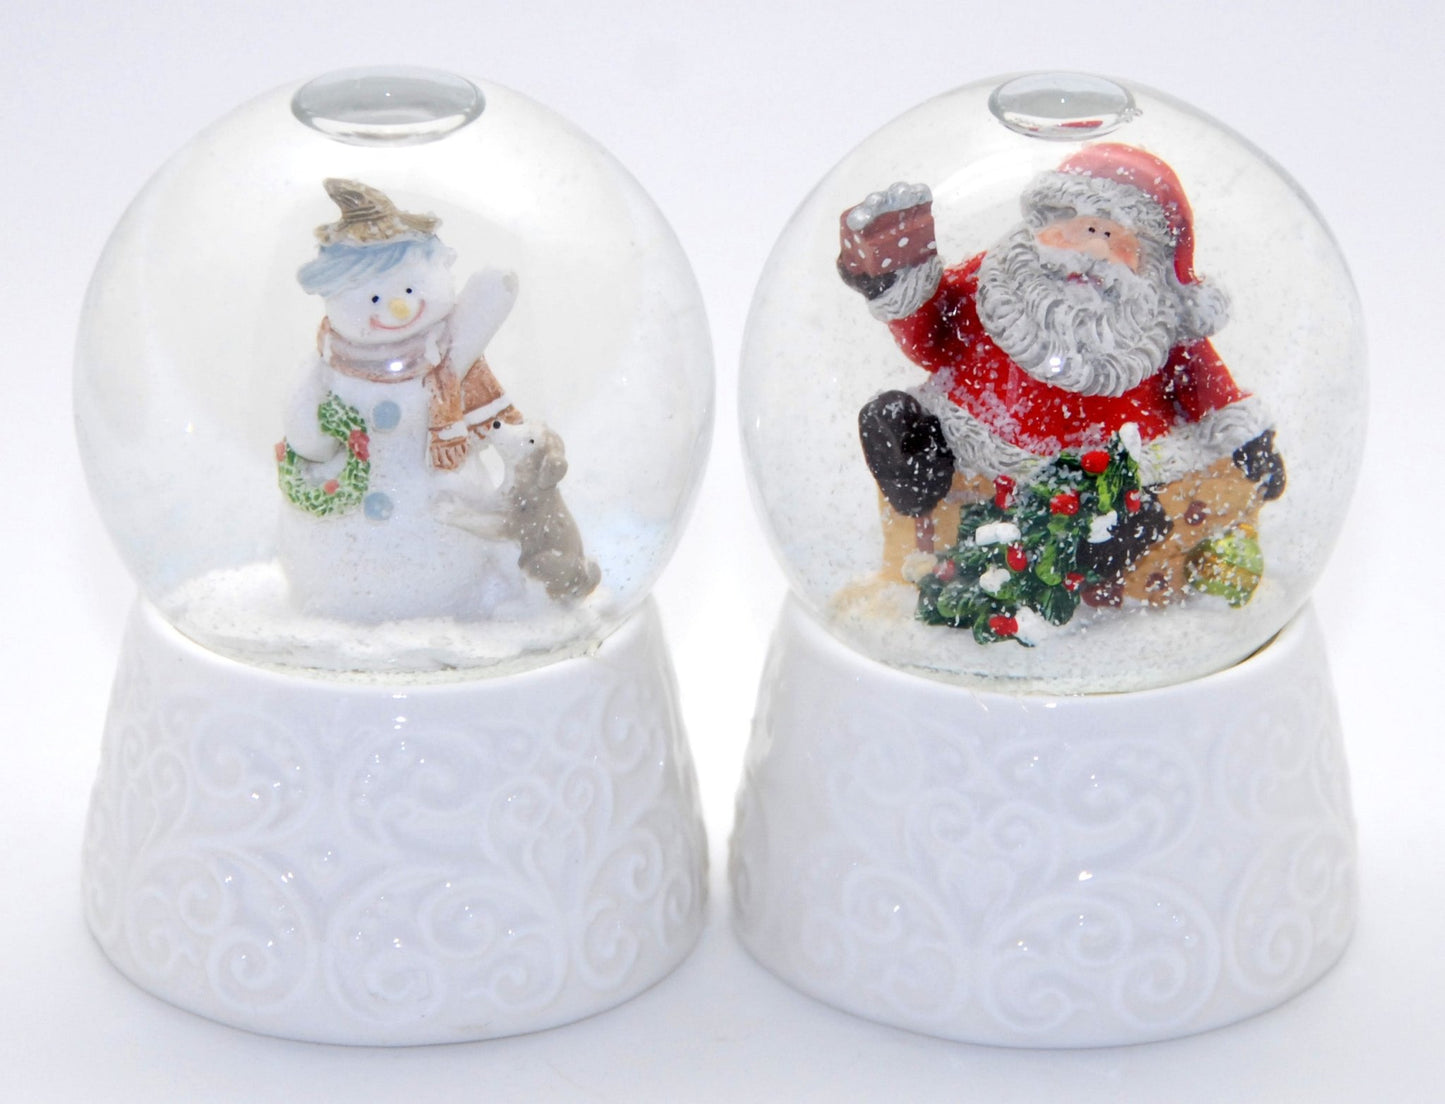 2 hochwertige Schneekugeln mit weißem Porzellansockel - Schneemann mit Hund und Weihnachtsmann 65mm Durchmesser - Luftblase - Schneekugelhaus